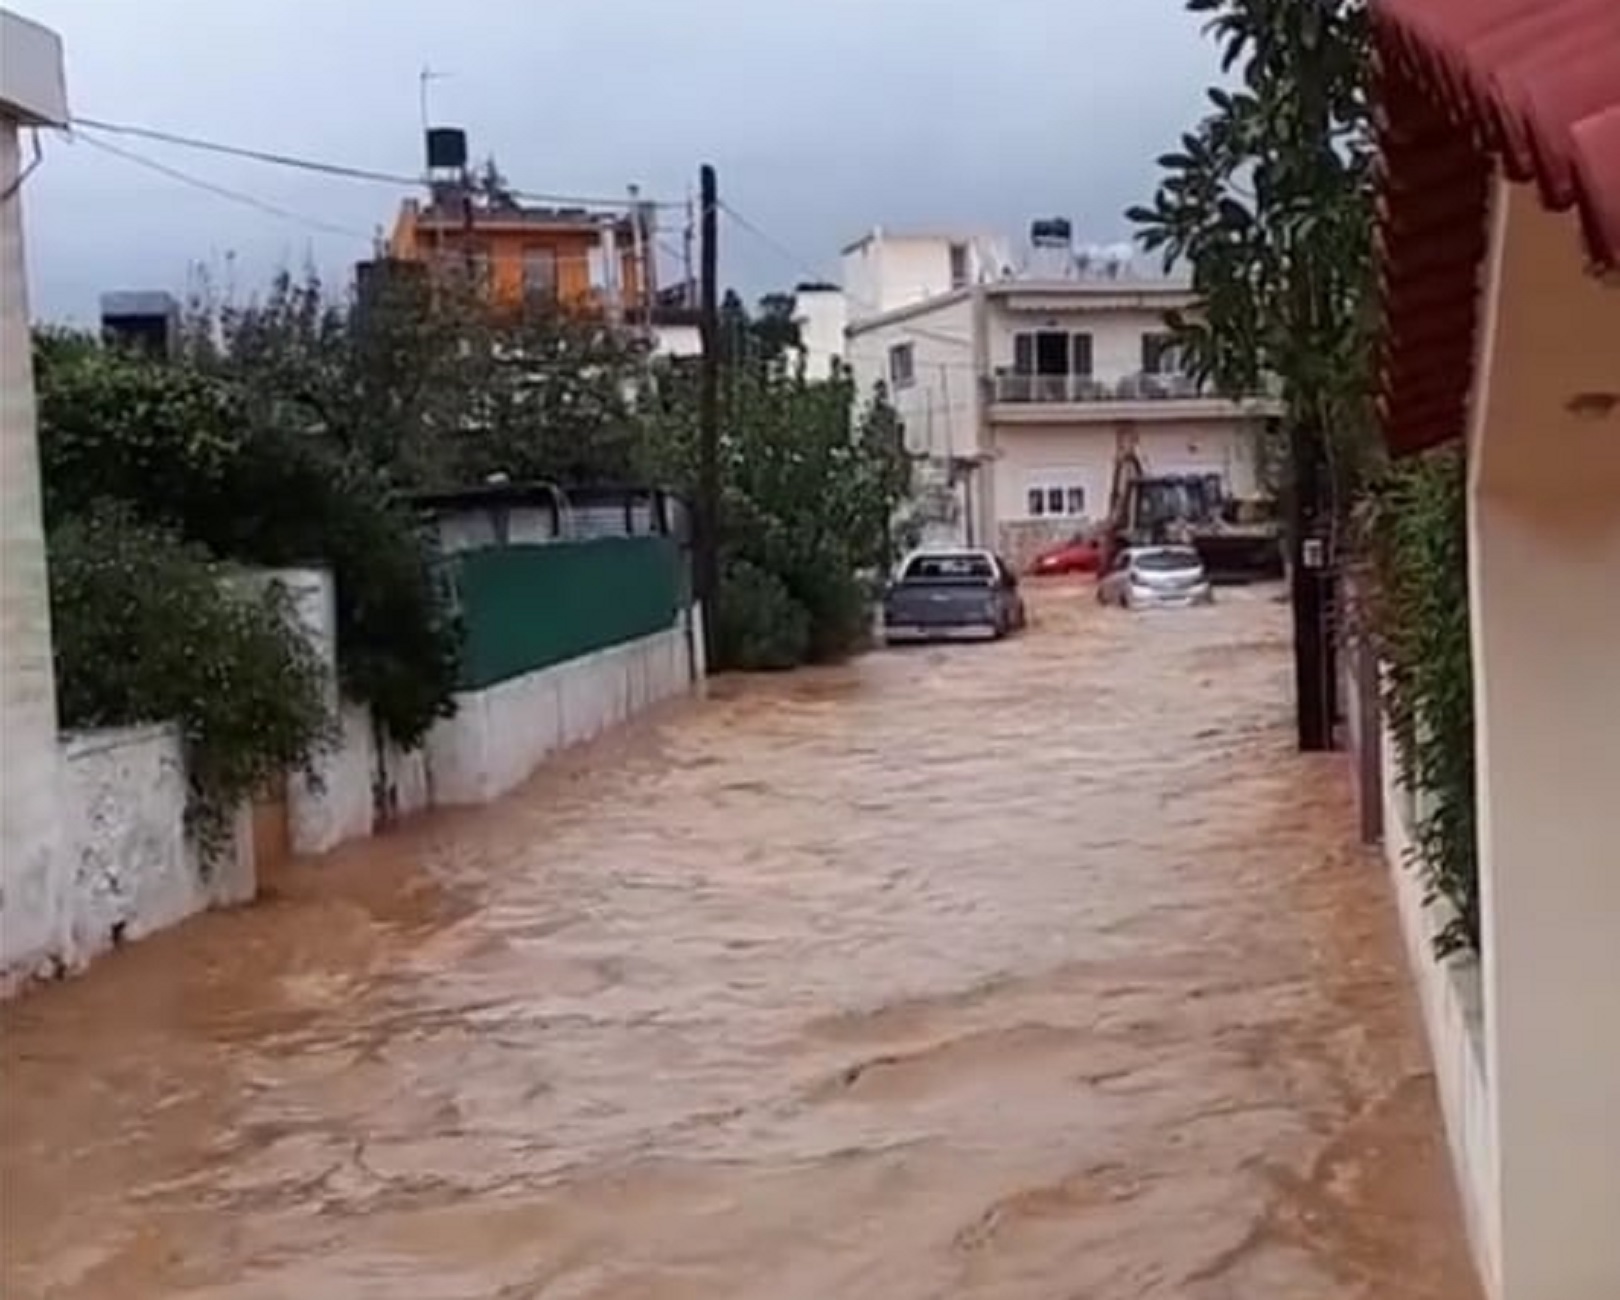 Κρήτη: Κατολισθήσεις μετά τις σαρωτικές πλημμύρες! Νέα προβλήματα λόγω κακοκαιρίας